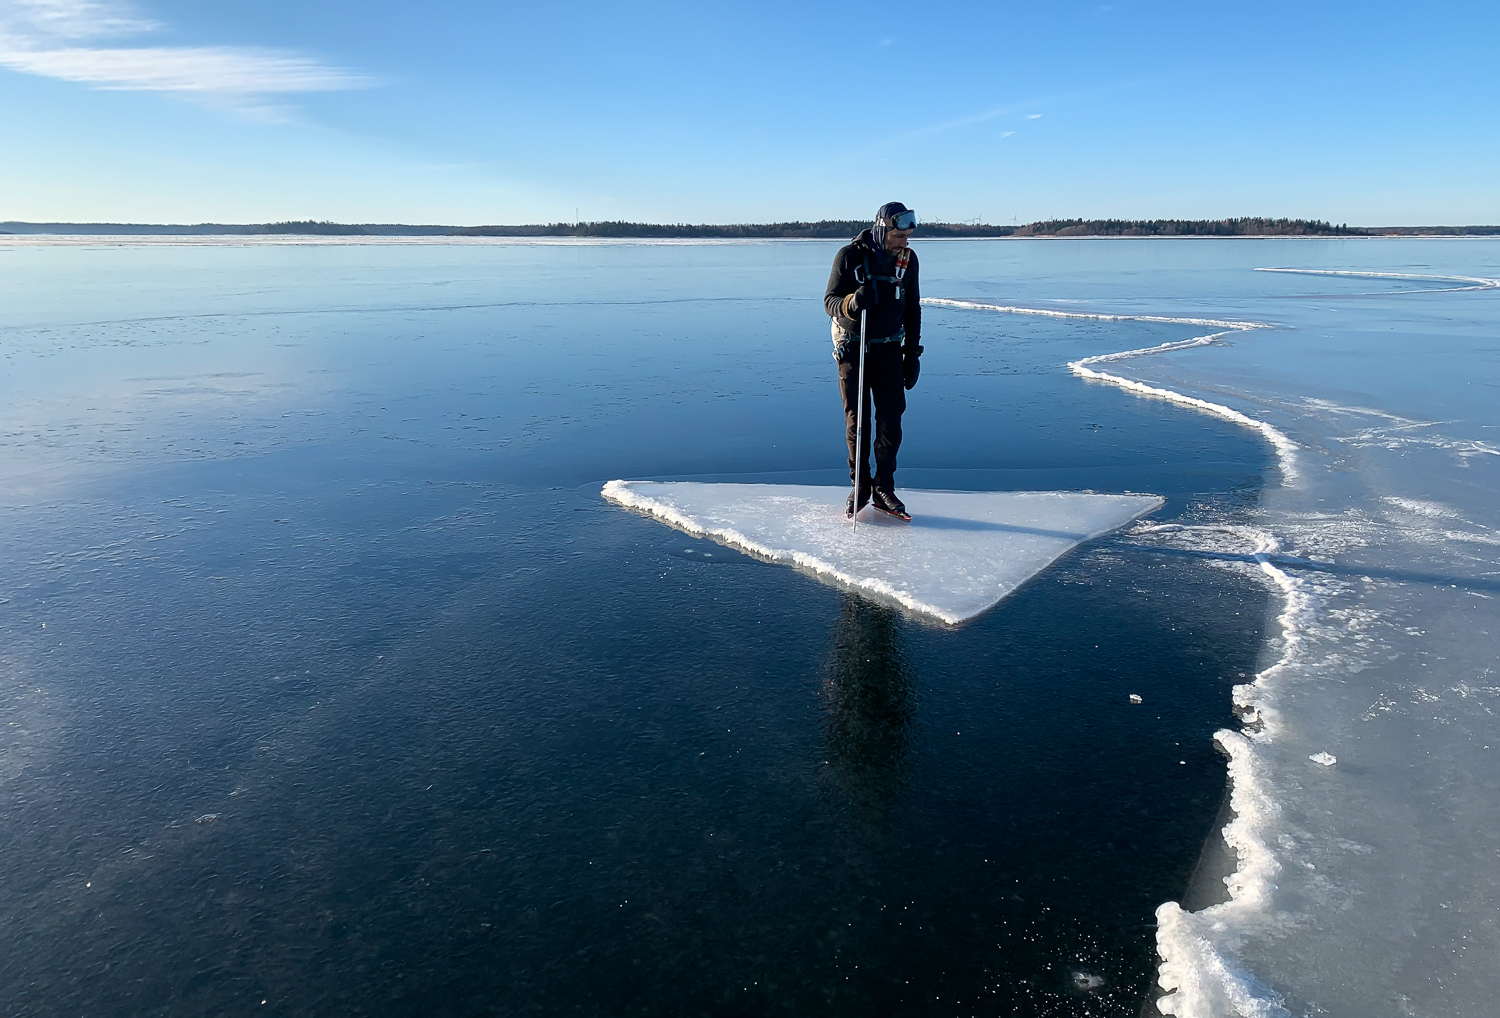 Långfärdsskridskoåkare provåker isflak på Singöfjärden, Stockholms norra skärgård